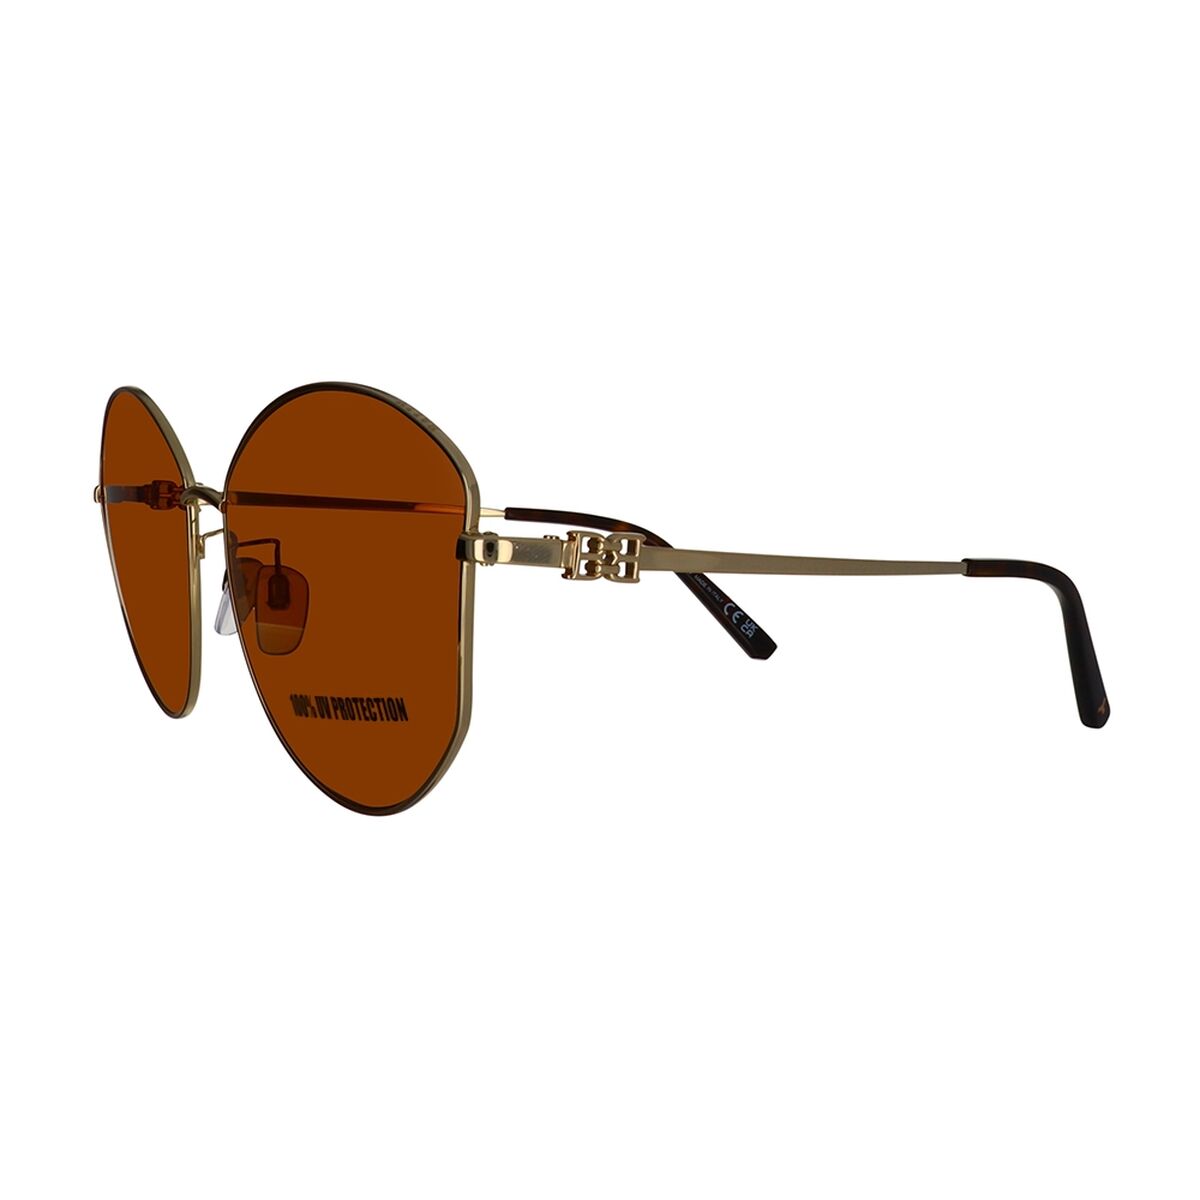 Kaufe Damensonnenbrille Bally BY0103_H-28E-61 bei AWK Flagship um € 124.00